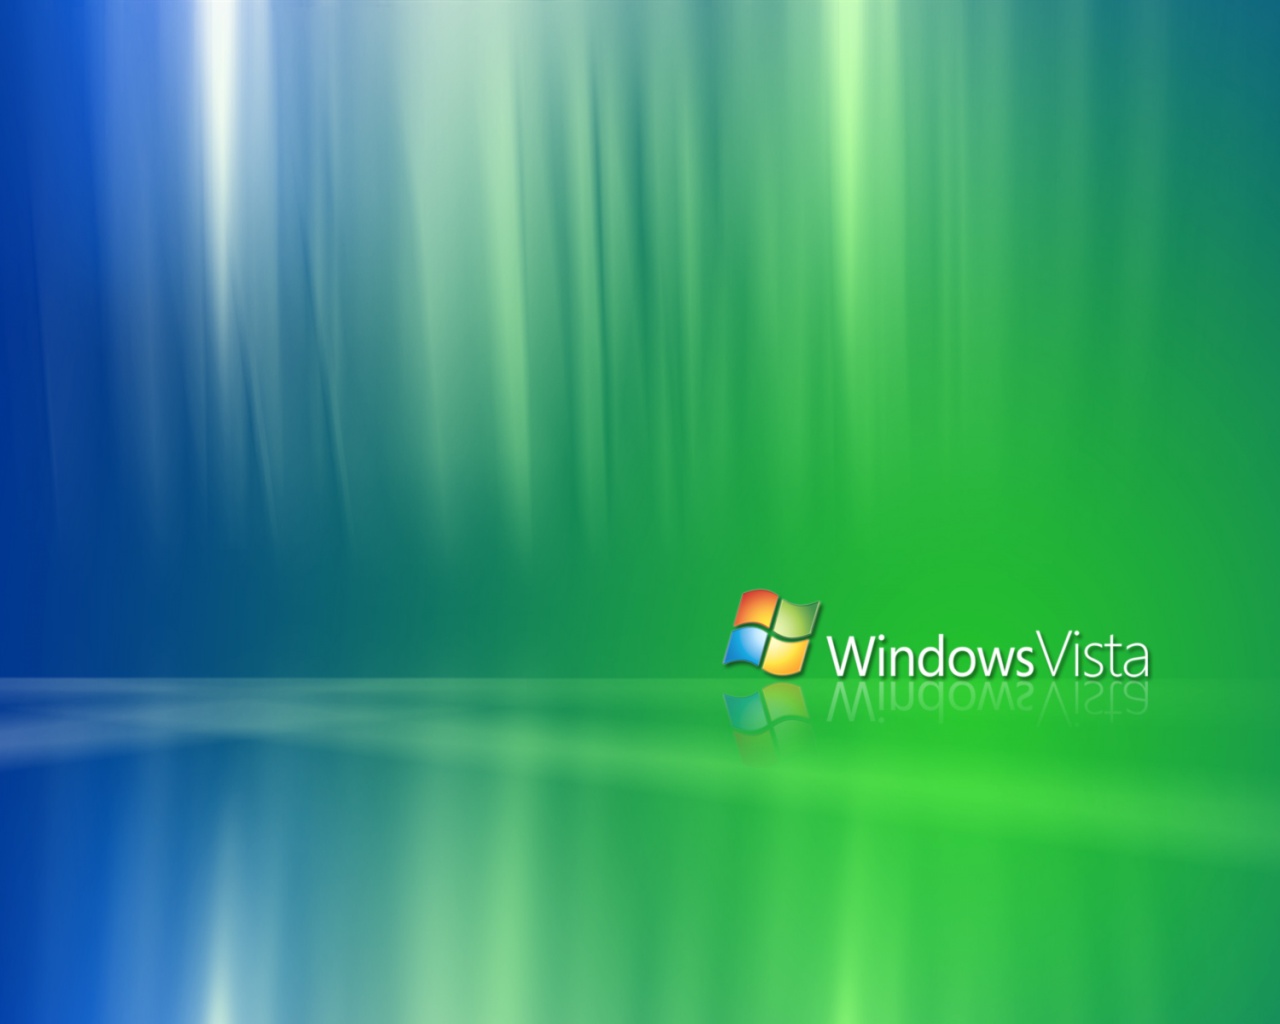 Tải hình nền Windows Vista miễn phí: Đừng bỏ lỡ cơ hội tải miễn phí những hình nền Windows Vista đẹp và độc đáo cho máy tính của bạn. Hãy thỏa sức sáng tạo với những mẫu hình nền đẹp mắt và phù hợp với cá tính của bạn.